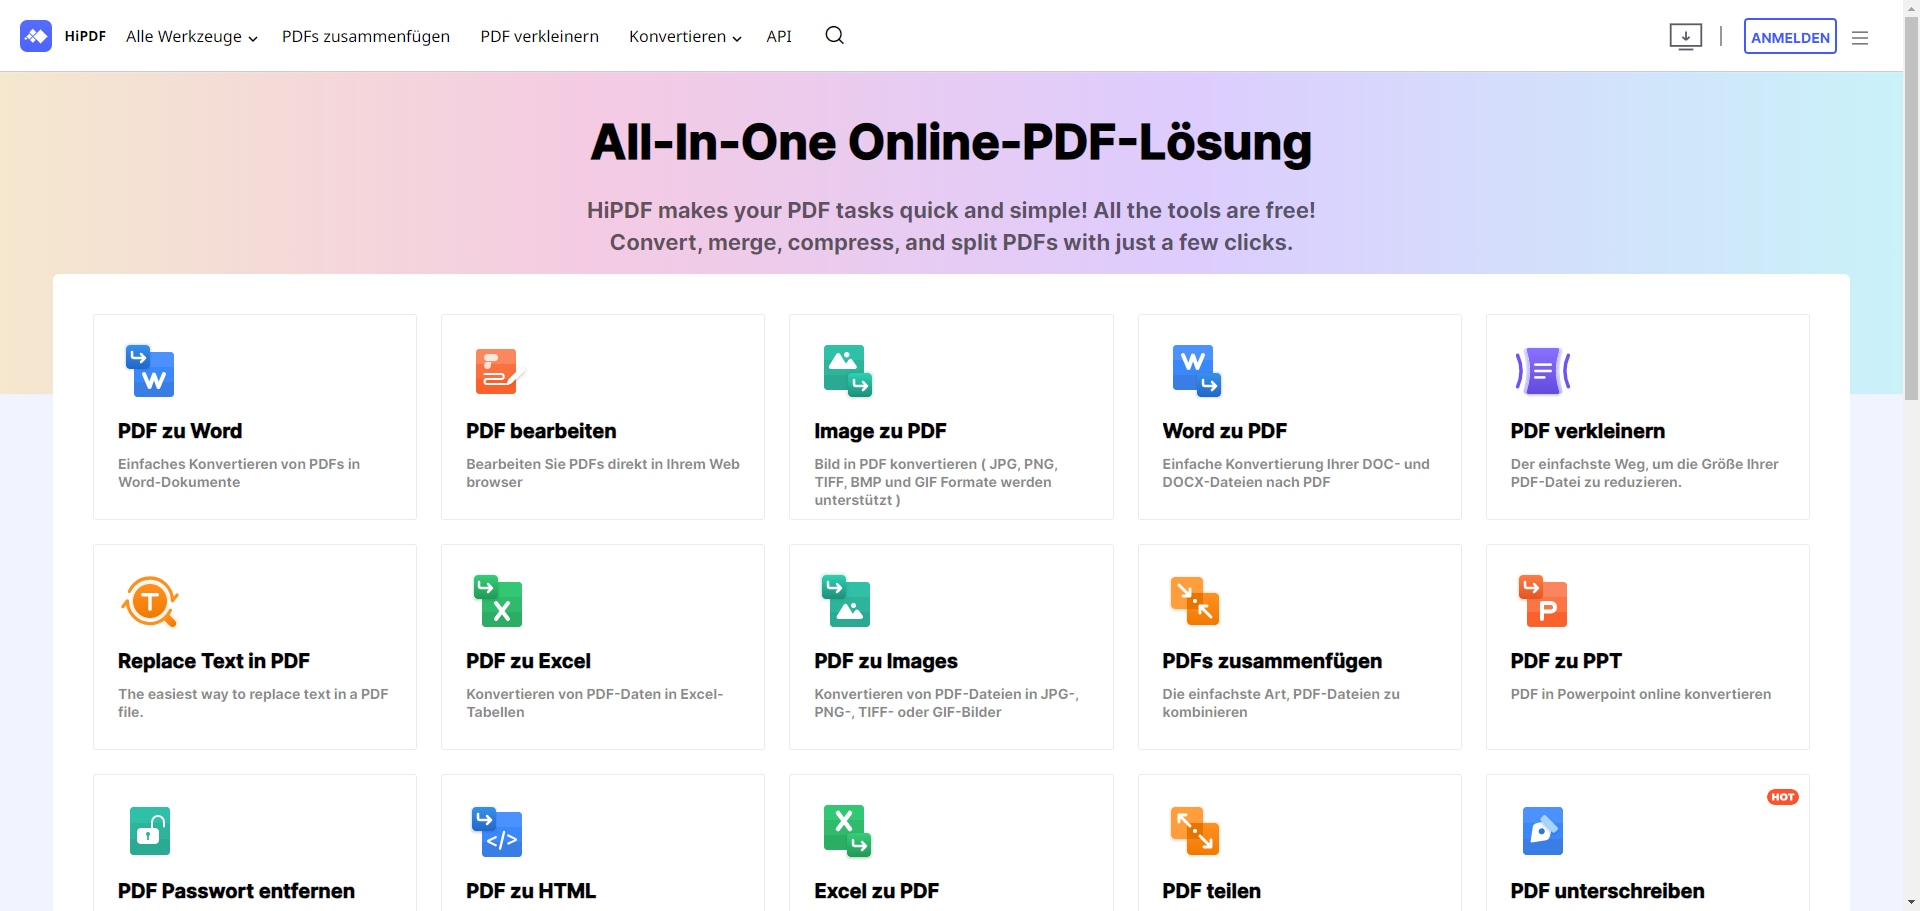 HiPDF ist ein kostenloser Online-PDF-Dienst, der Ihnen alle Tools bietet, die Sie für die Bearbeitung von PDF-Workflows benötigen. Sie können sich auch registrieren und zusätzliche Funktionen nutzen, aber selbst der Grunddienst umfasst fortschrittliche Tools wie OCR.